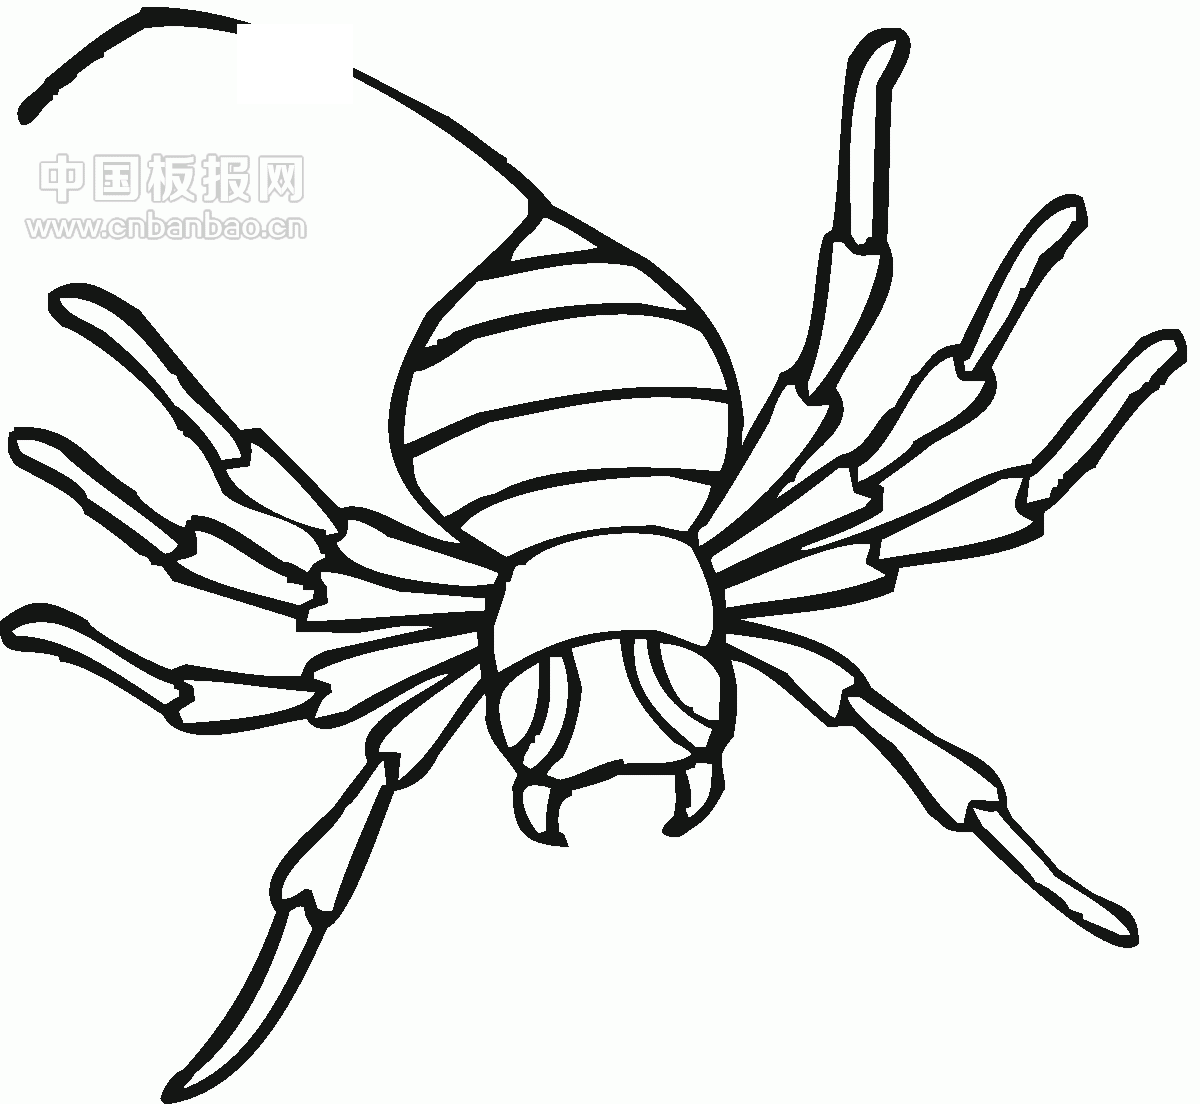 卡通蜘蛛网蜘蛛丝元素图片素材免费下载 - 觅知网